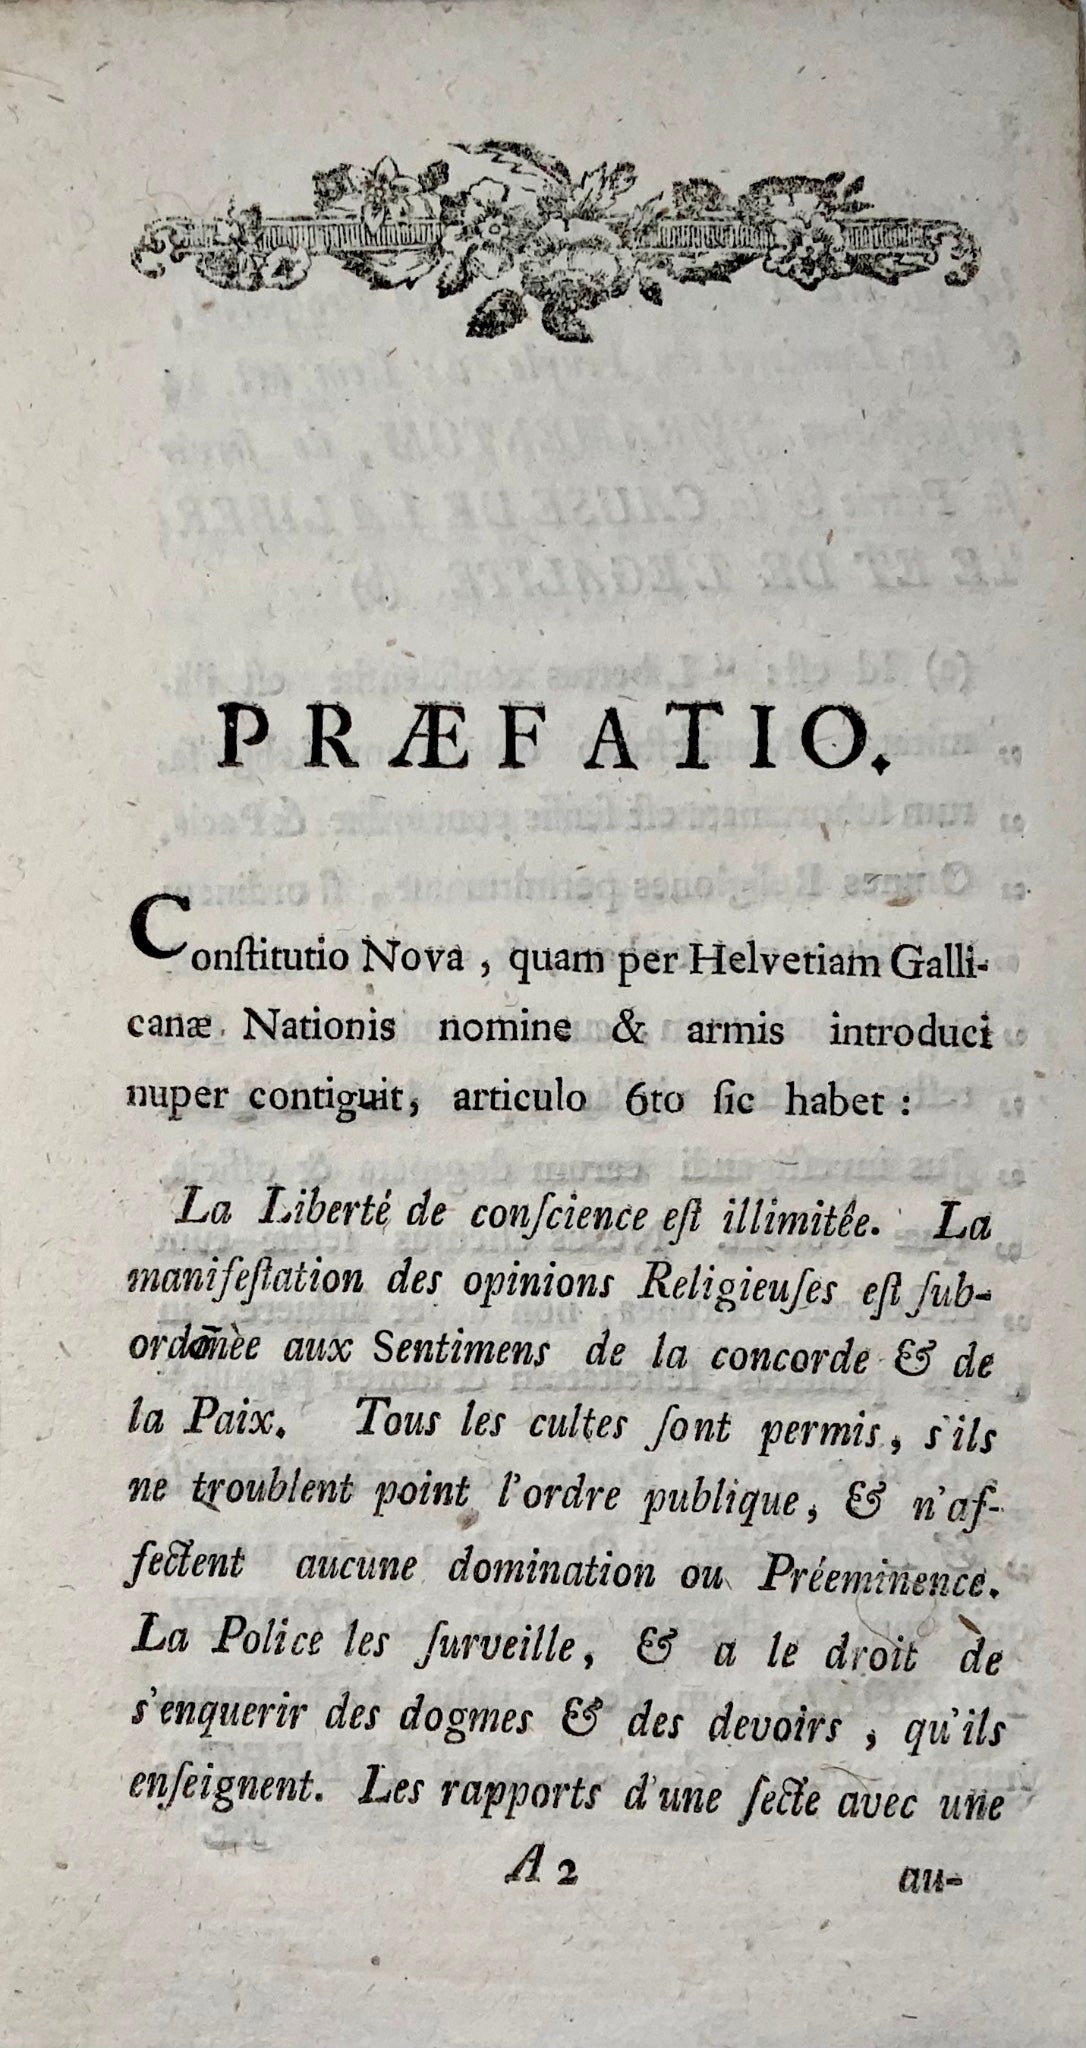 1798 Réflexions sur la Constitution de la Suisse, République helvétique, brochure